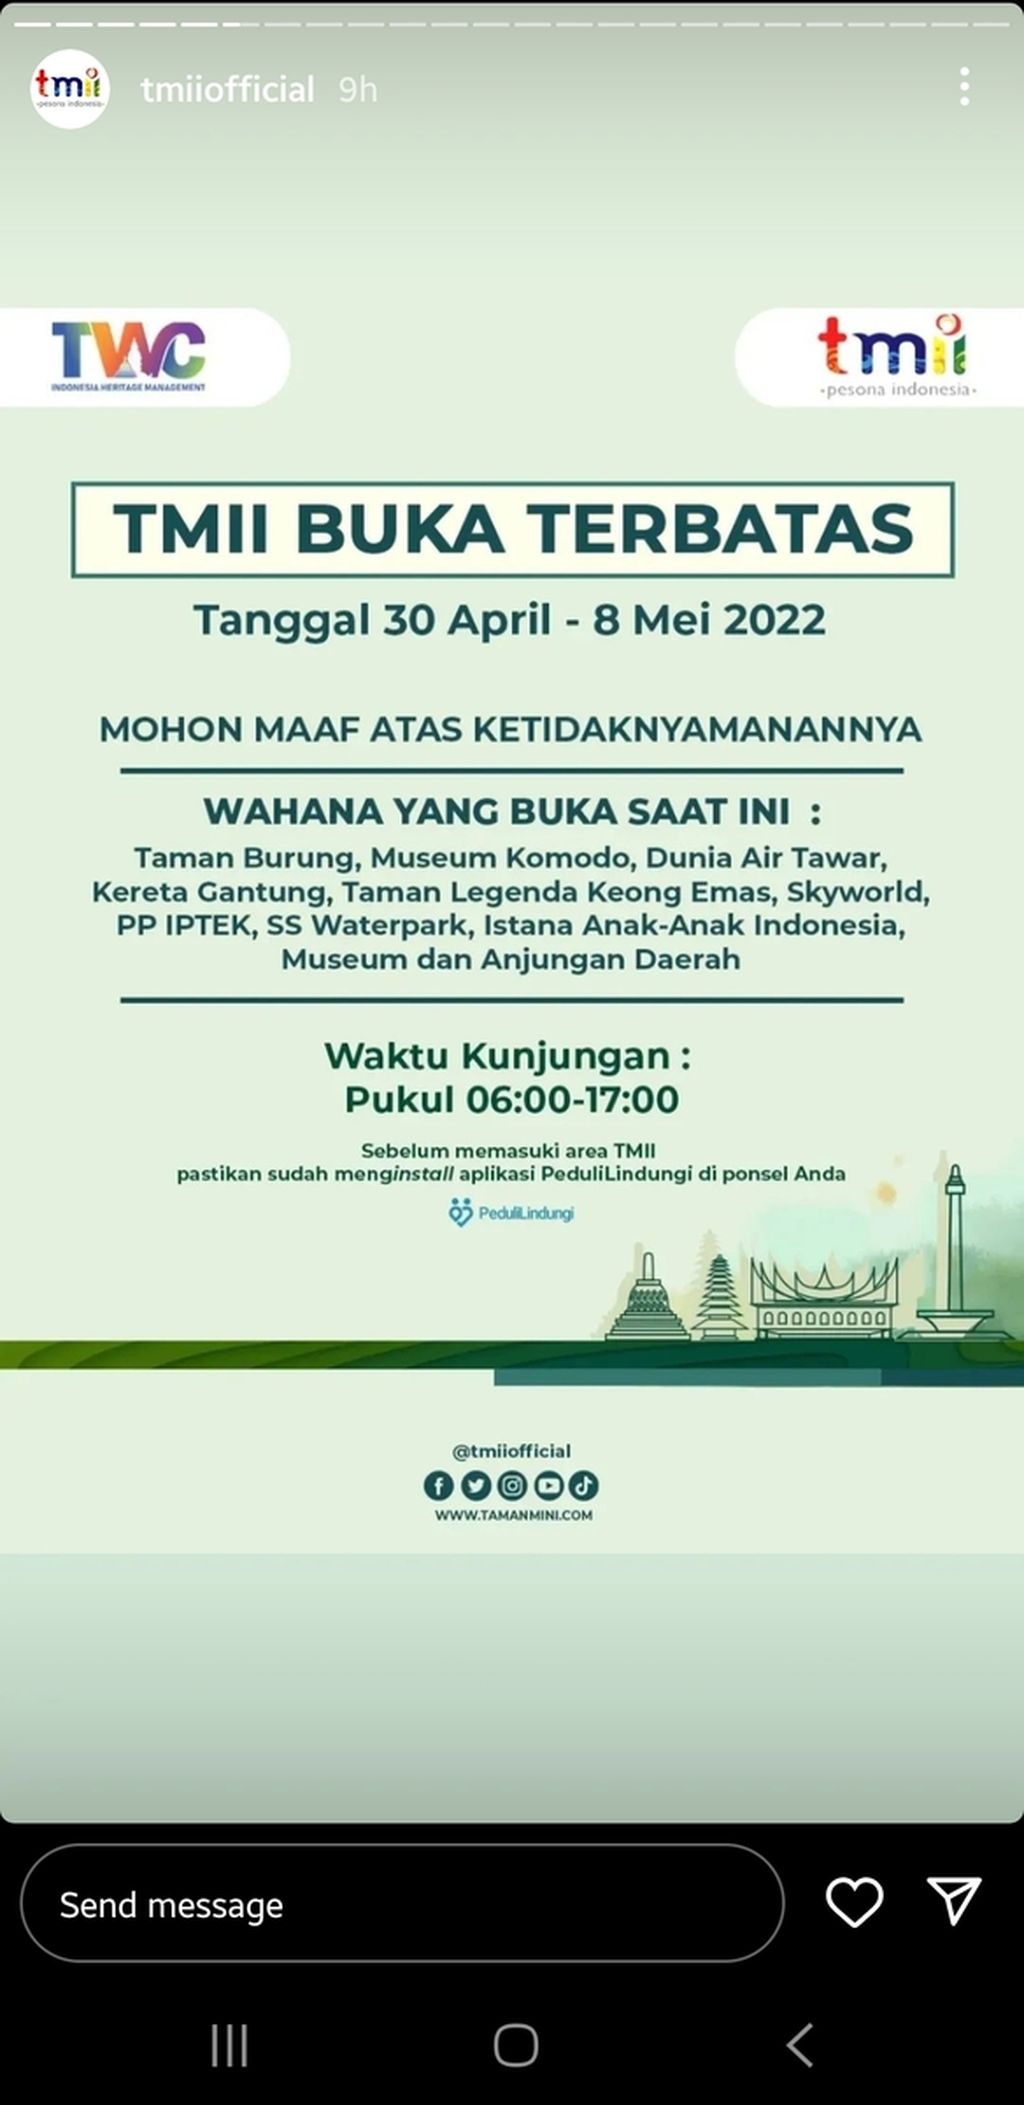 Pengumuman operasional Taman Mini Indonesia Indah selama libur Lebaran 2022.